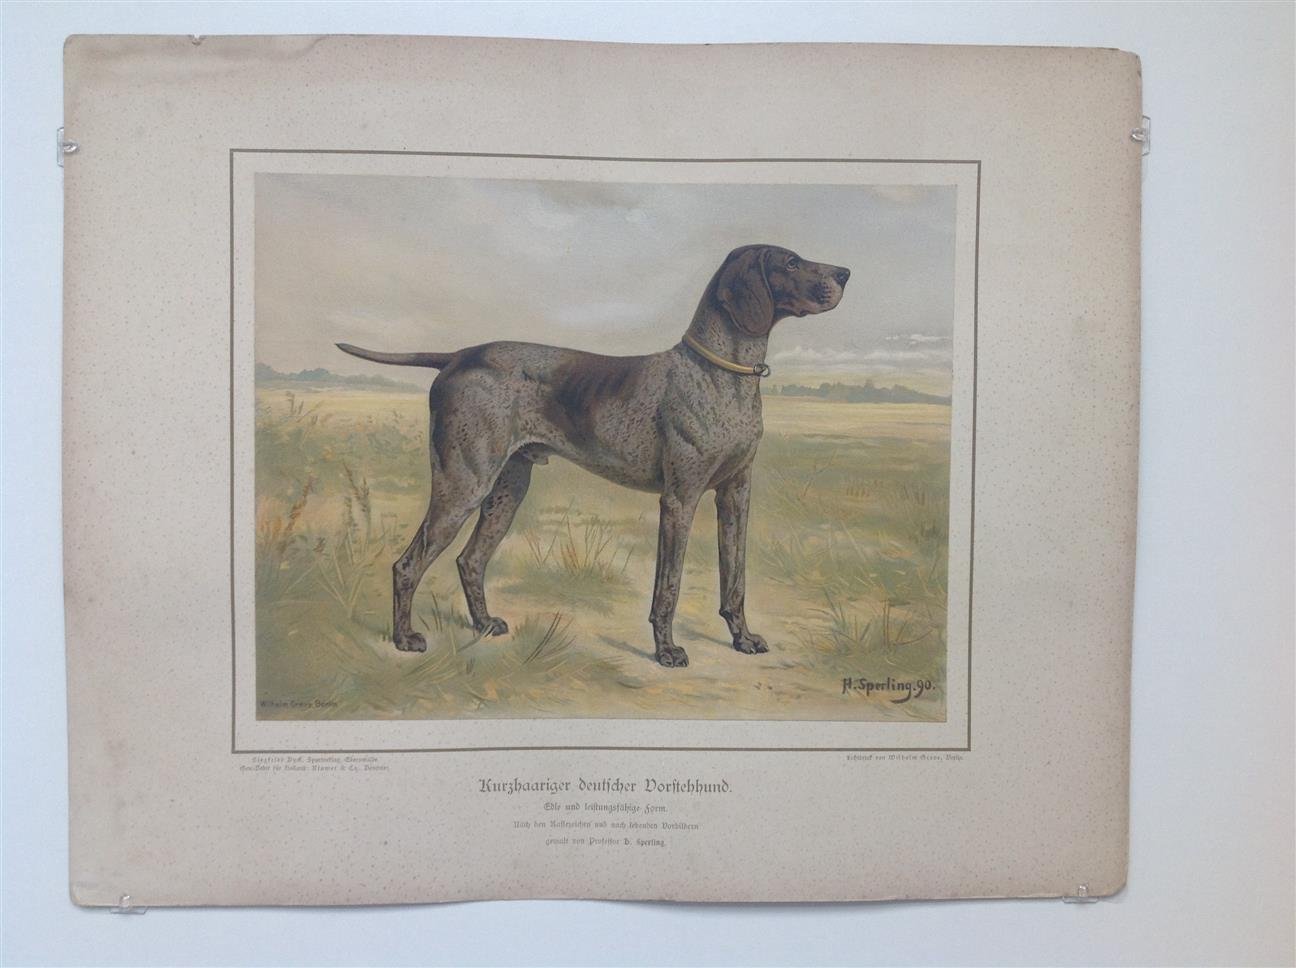 H. Sperling - lithograaf : Wilhelm Greve - (DECORATIEVE PRENT,  LITHO - DECORATIVE PRINT, LITHOGRAPH -) Rashond - Duitse staande hond korthaar /  German Short-Haired Pointing Dog Spotted